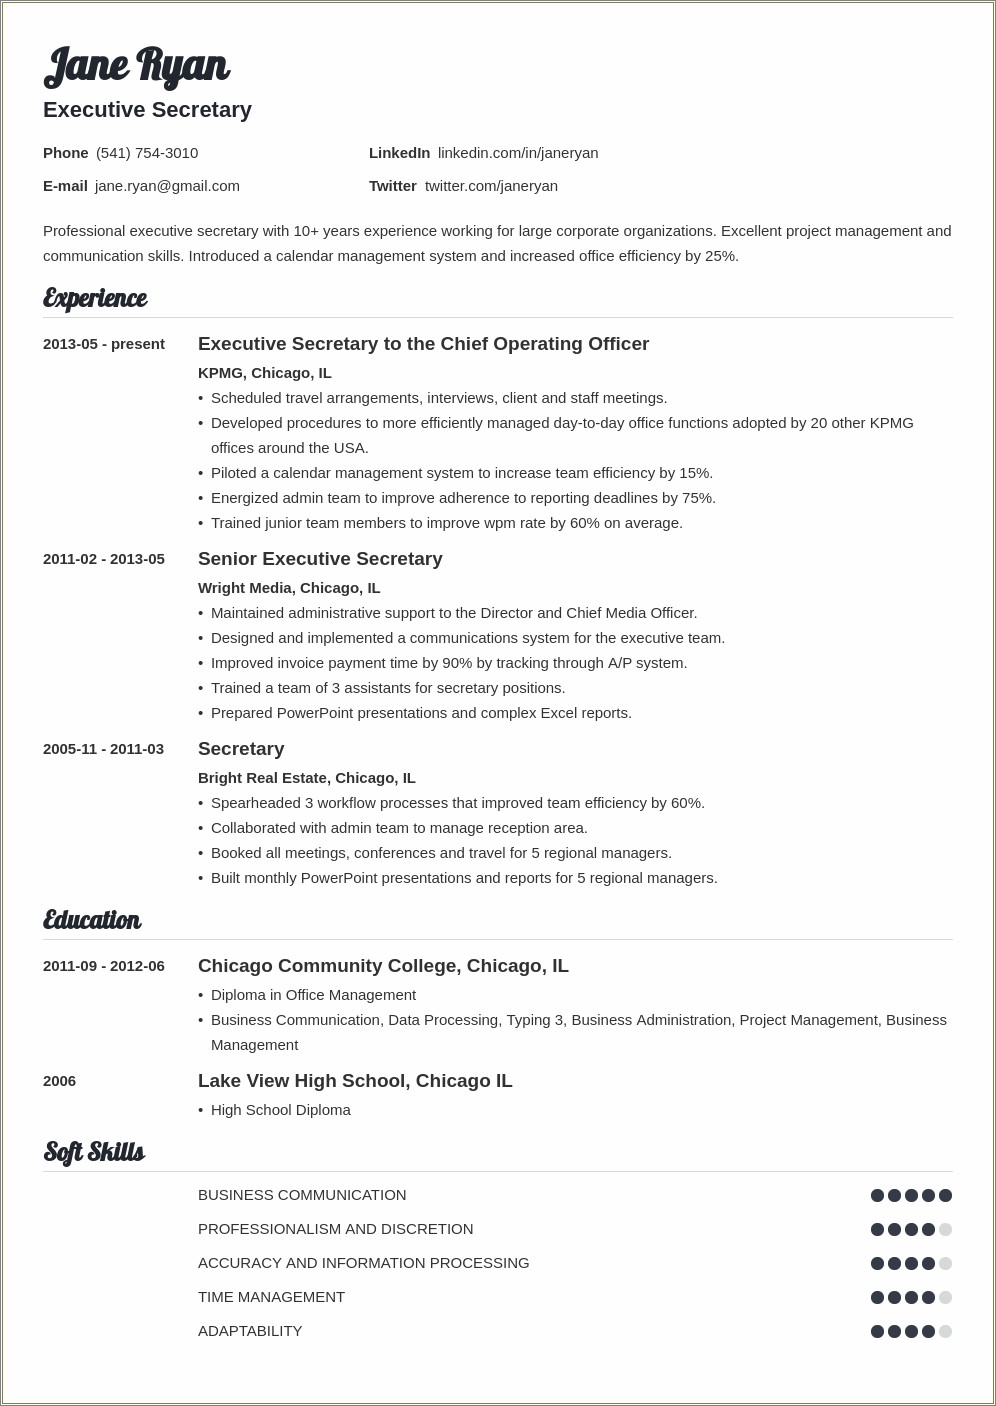 Resume For School Secretary Position Sample